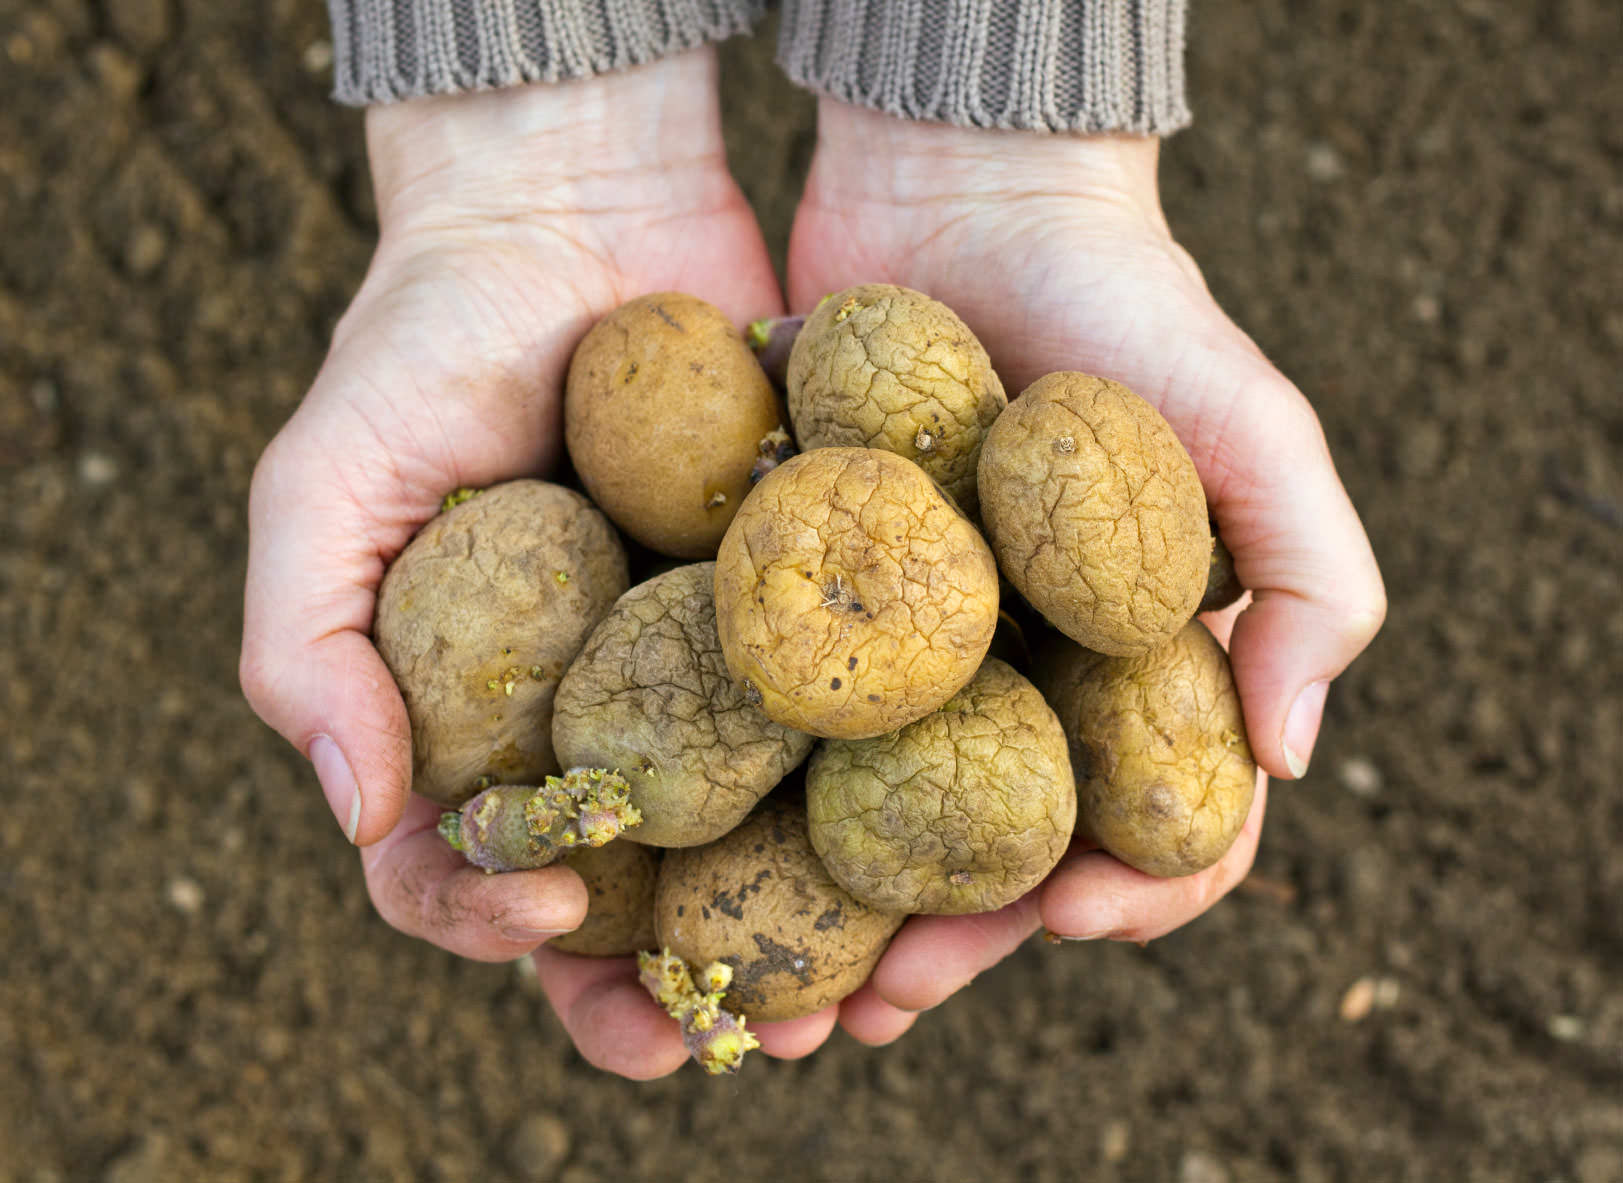 Получить высокий урожай картофеля позволяет правильный посадочный материал